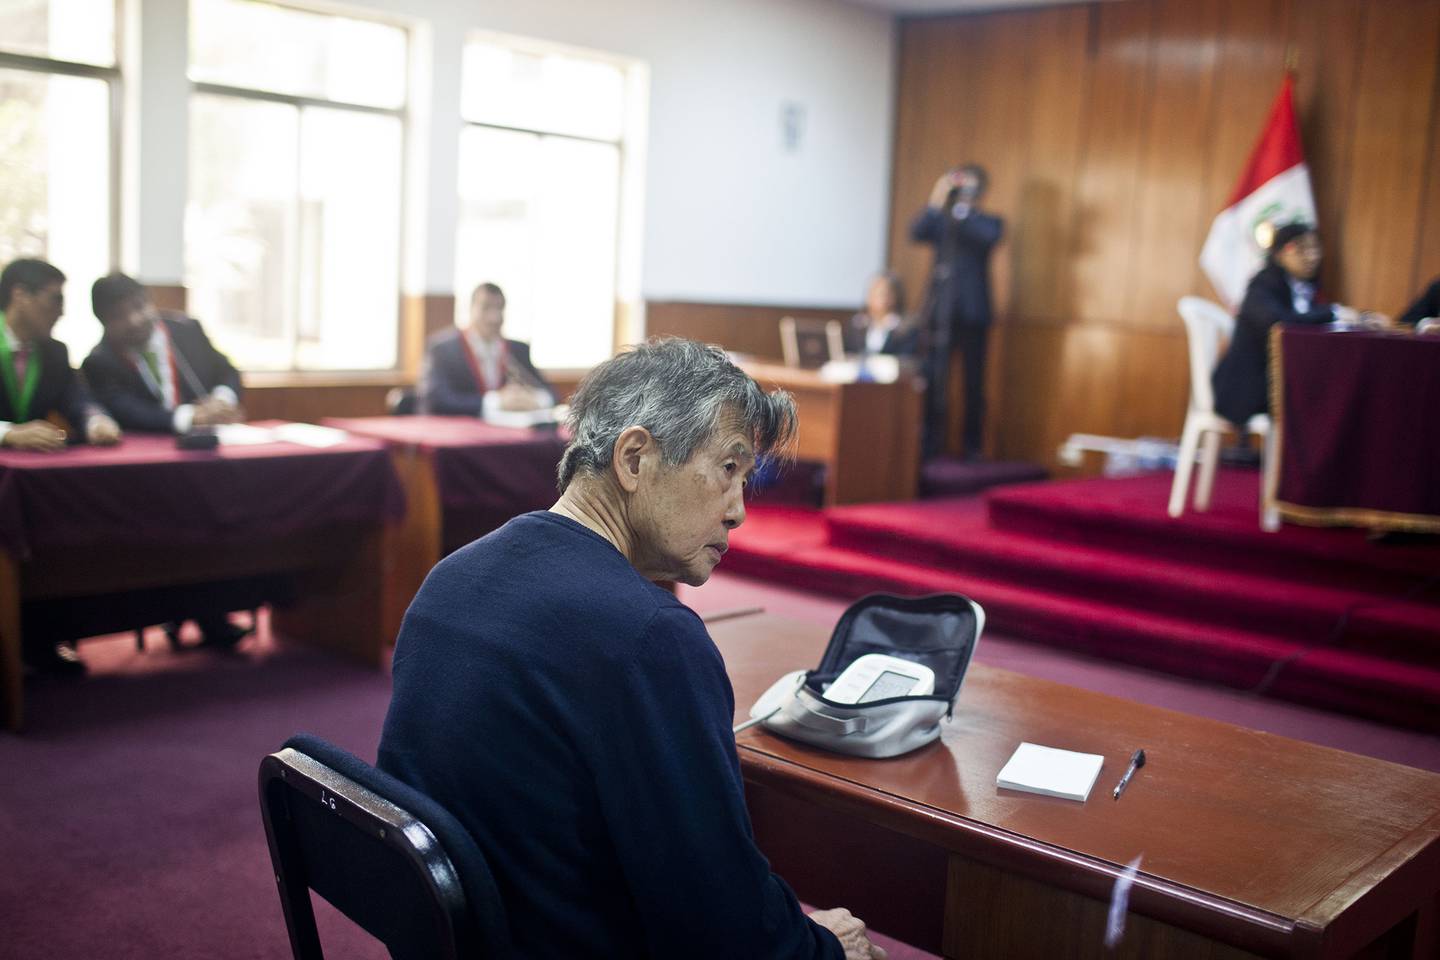 El expresidente de Perú (1990-2000) Alberto Fujimori controla su presión arterial antes de una audiencia en un tribunal de Lima, el 17 de octubre de 2013.Fotógrafo: ERNESTO BENAVIDES/AFP